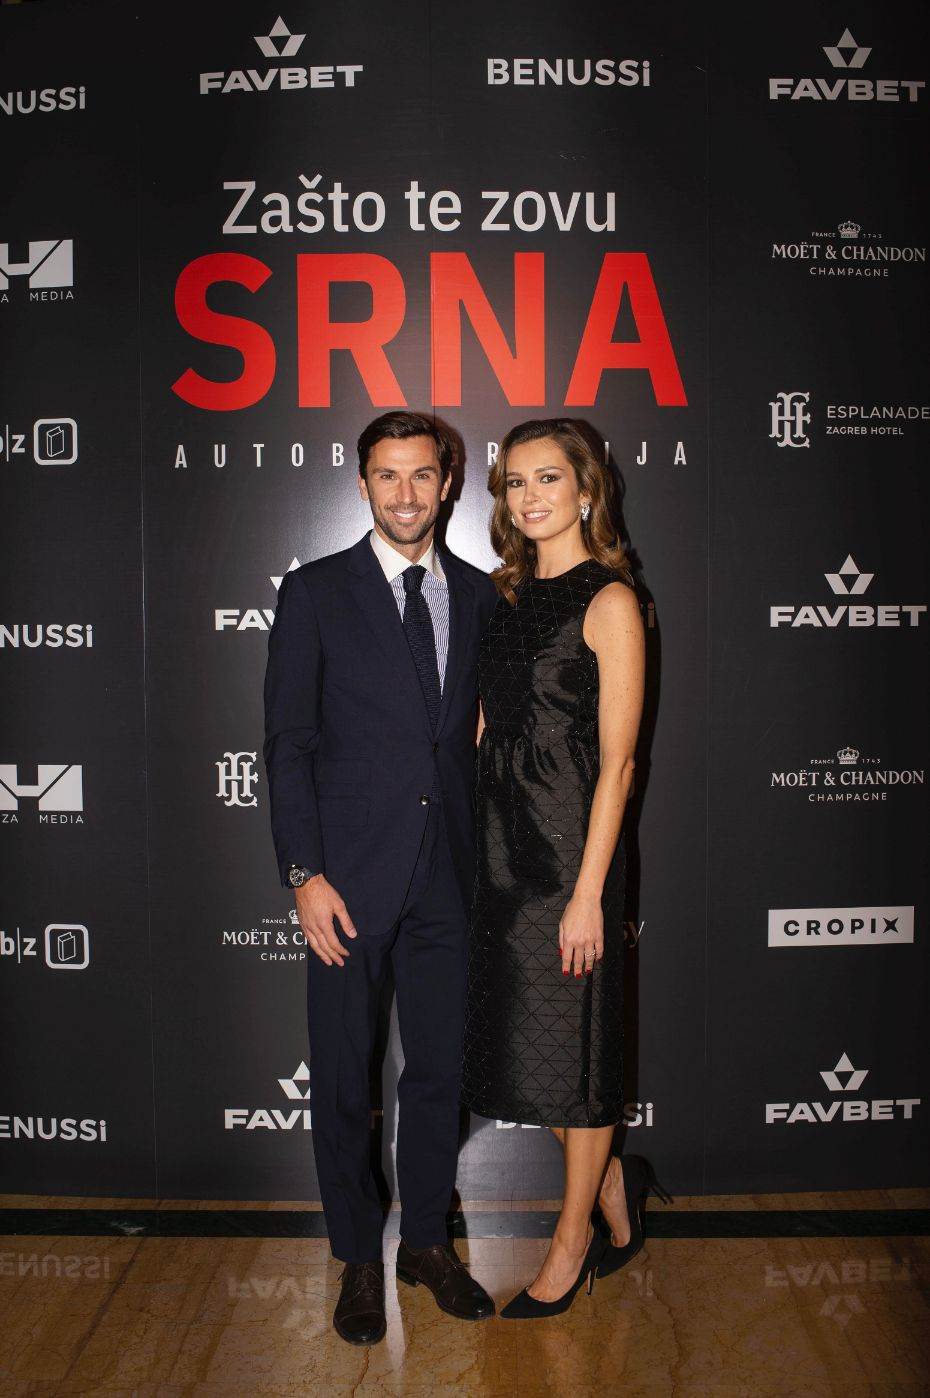 Darijo Srna i Mirela Srna su u braku od 2010. godine